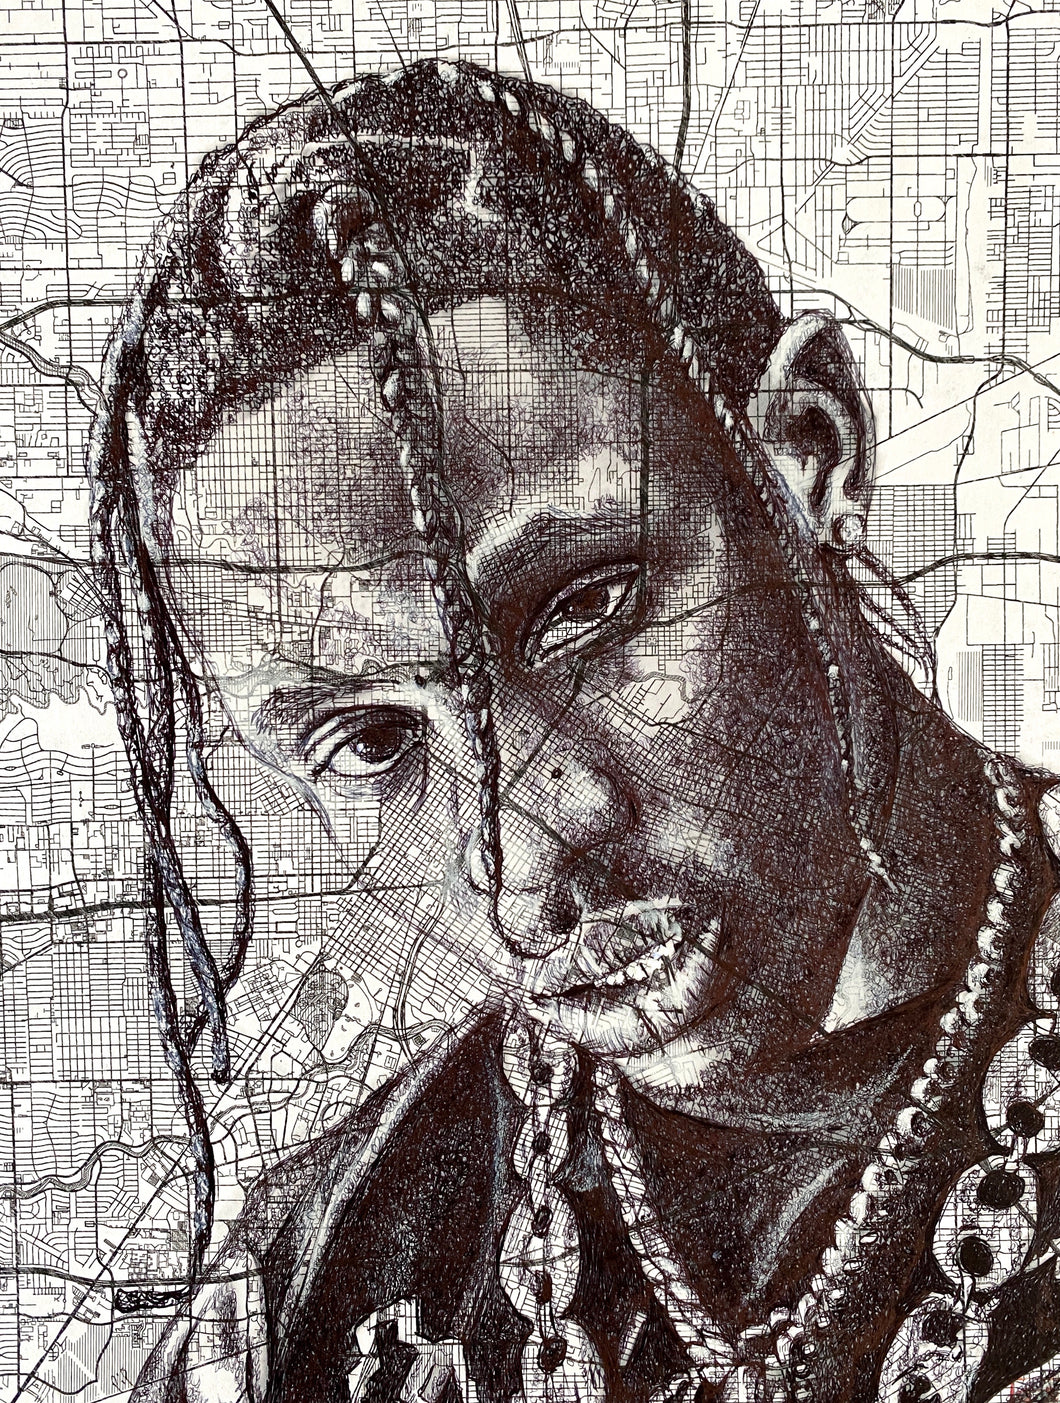 Travis Scott Inspired Portrait. Original Pen Drawing Over Map of Houston. Unframed